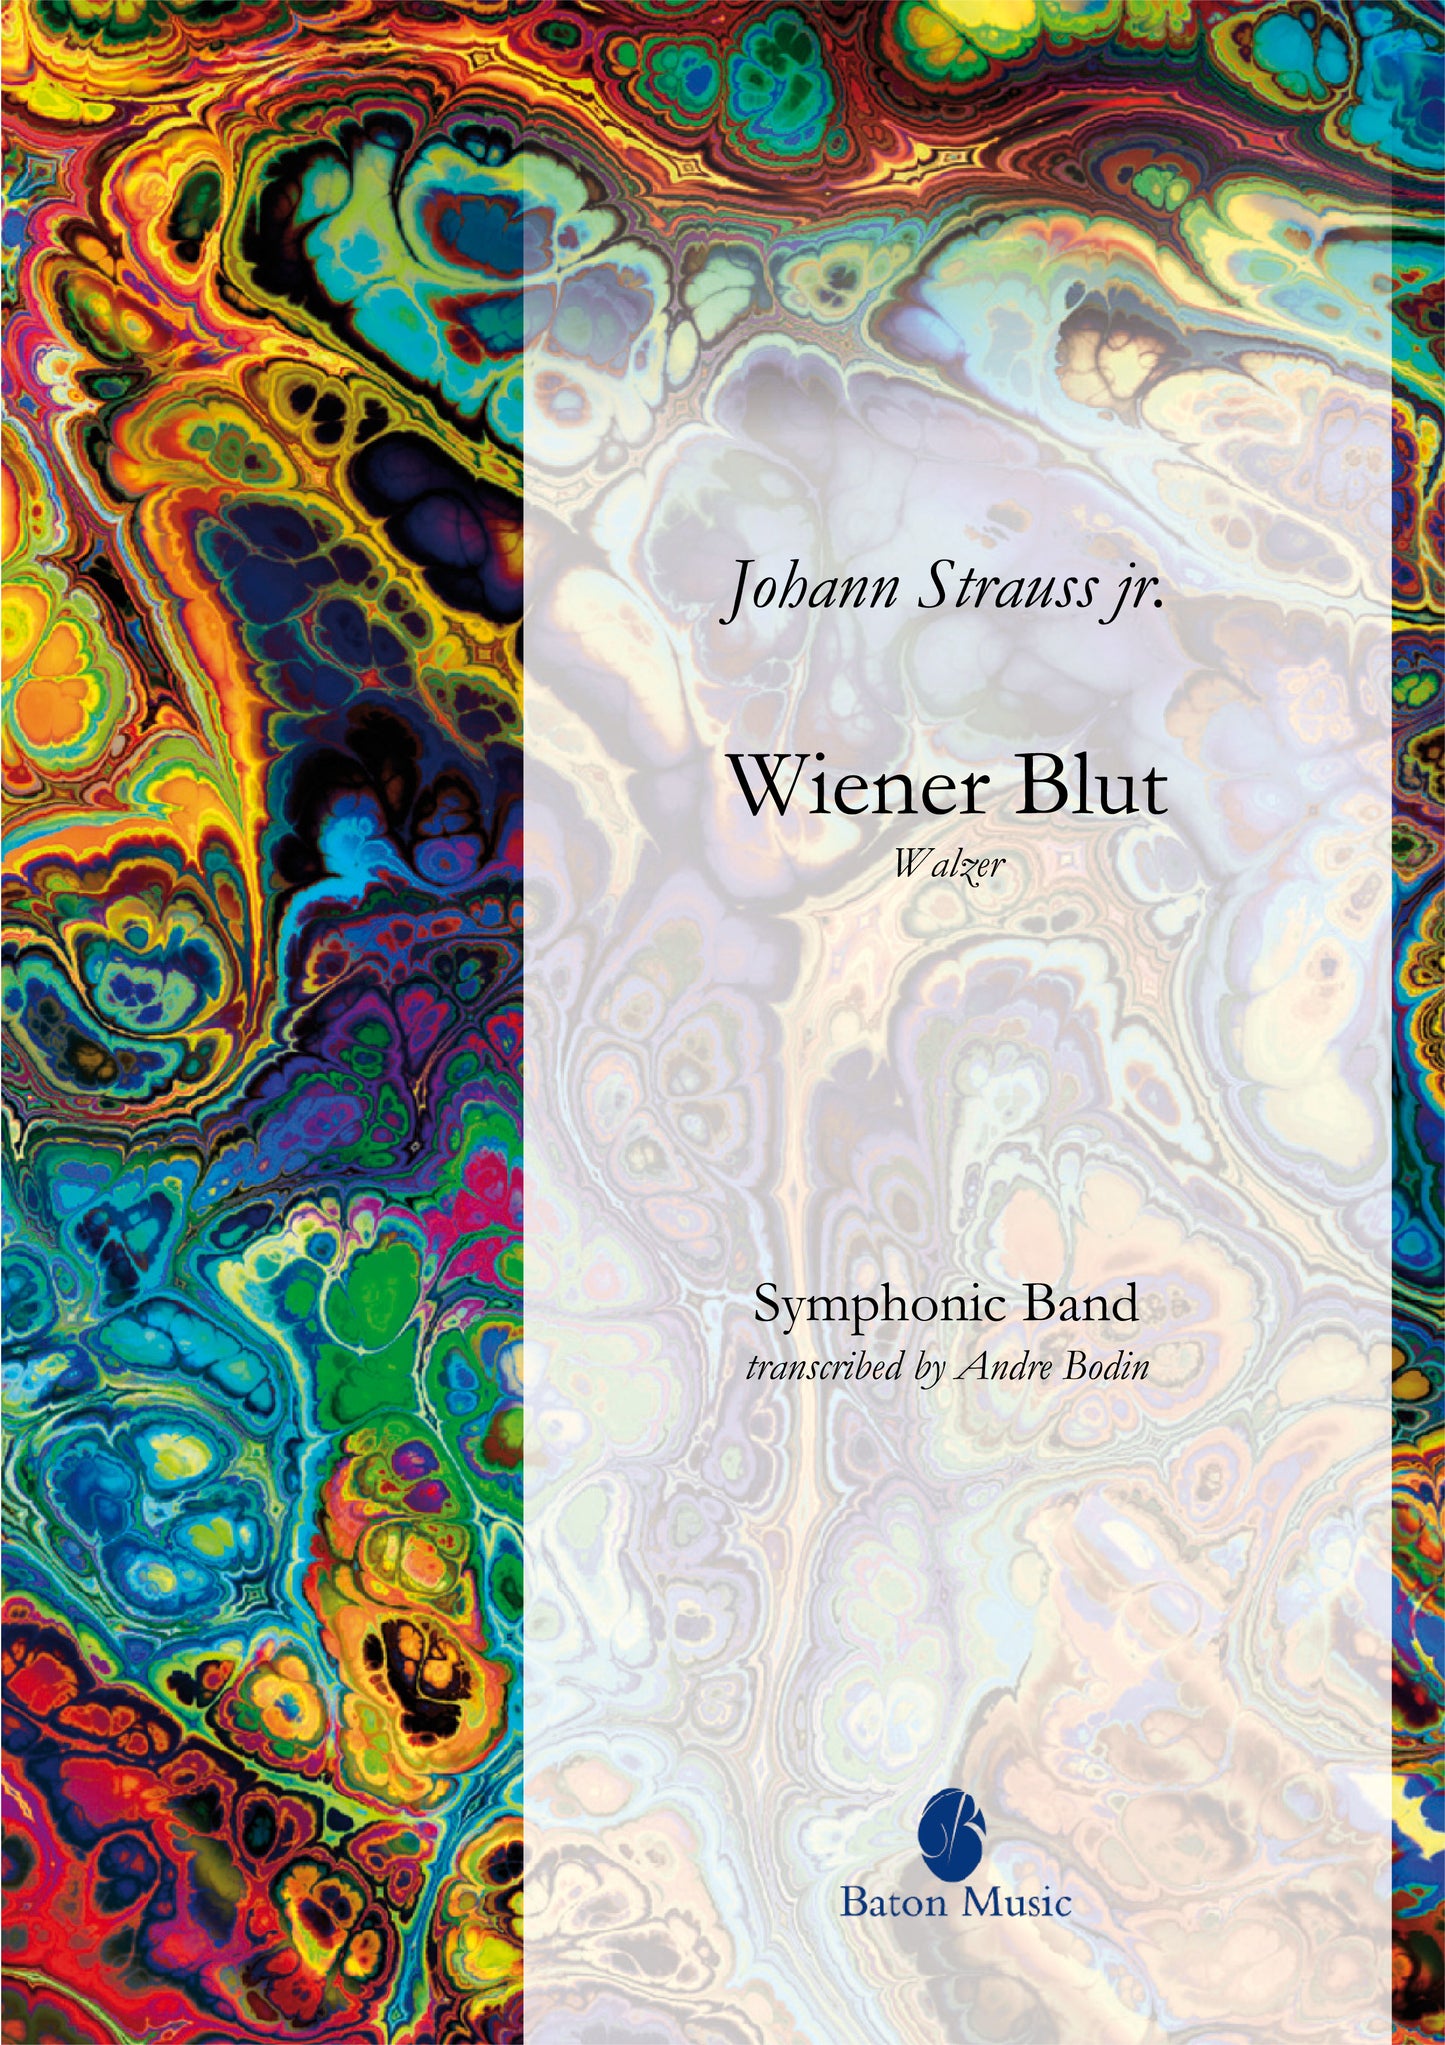 Wiener Blut (Waltz) - Johann Strauss